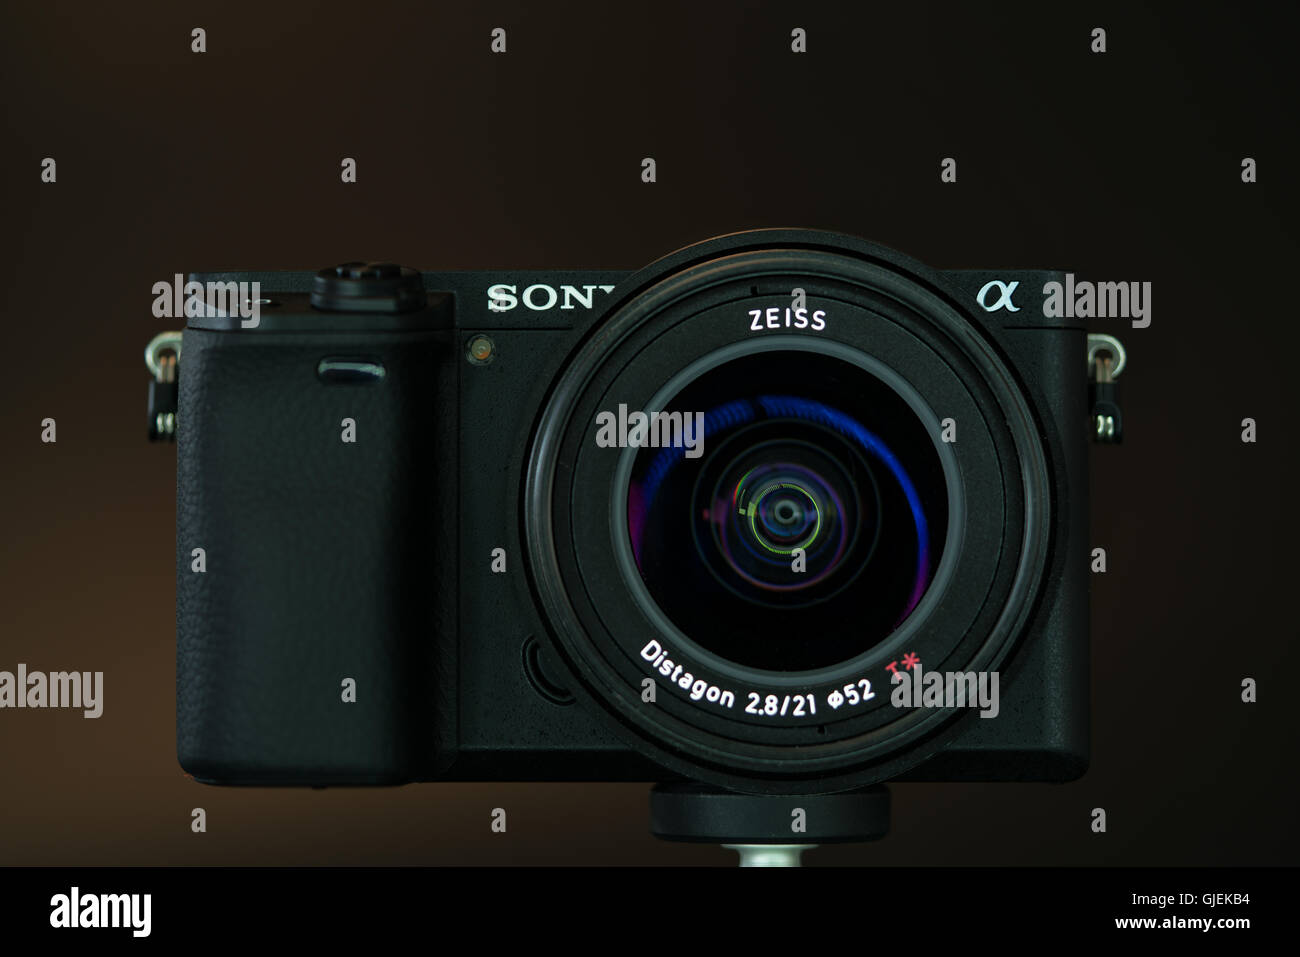 BERLIN, Deutschland - 6. Juni 2016: Sony Alpha a6300 spiegellose schnelle Fokussierung und 4 K-shooting Digitalkamera mit Zeiss 21 mm Objektiv Stockfoto